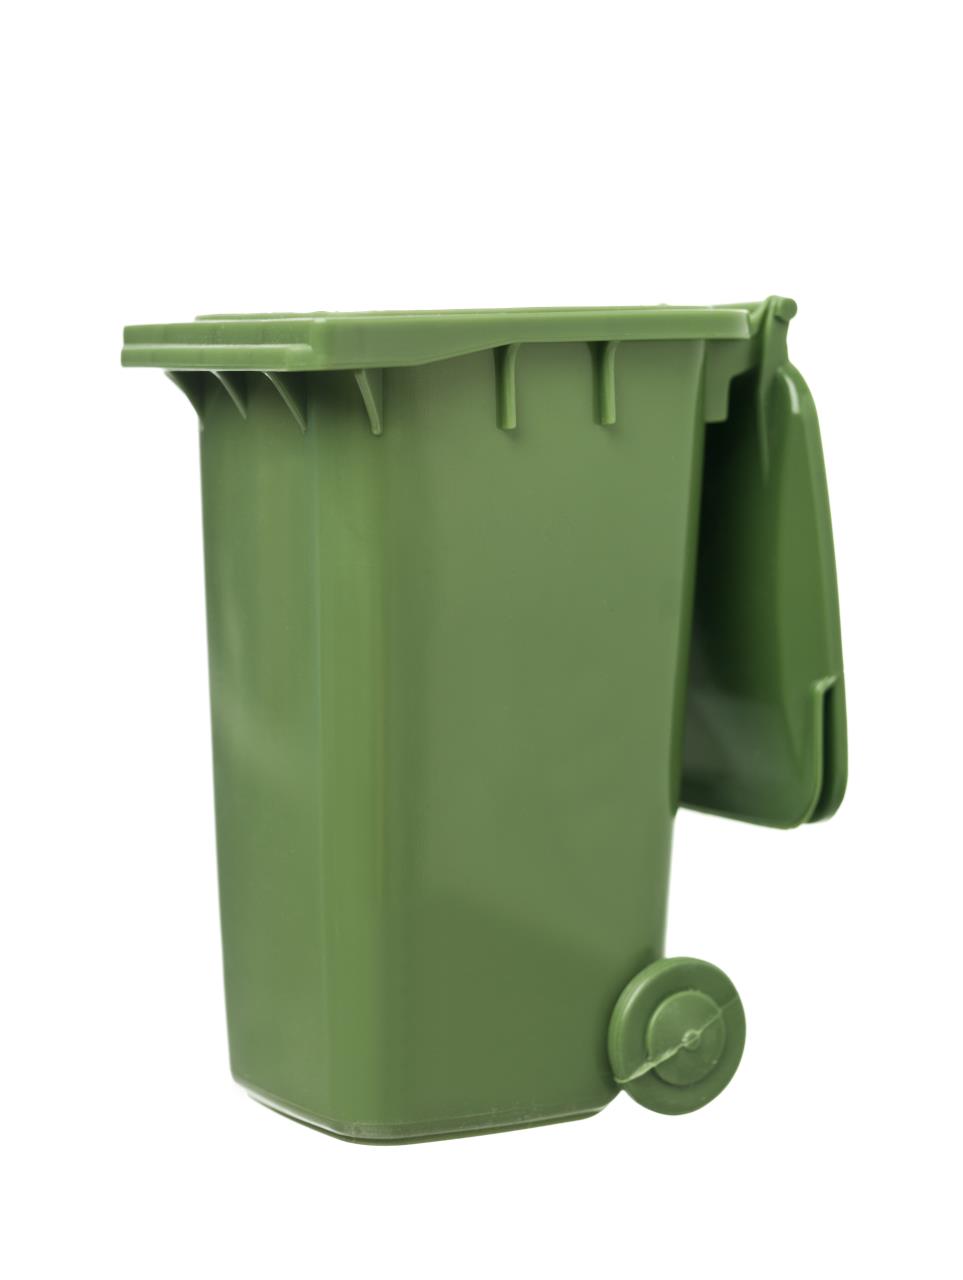 New rubbish bin